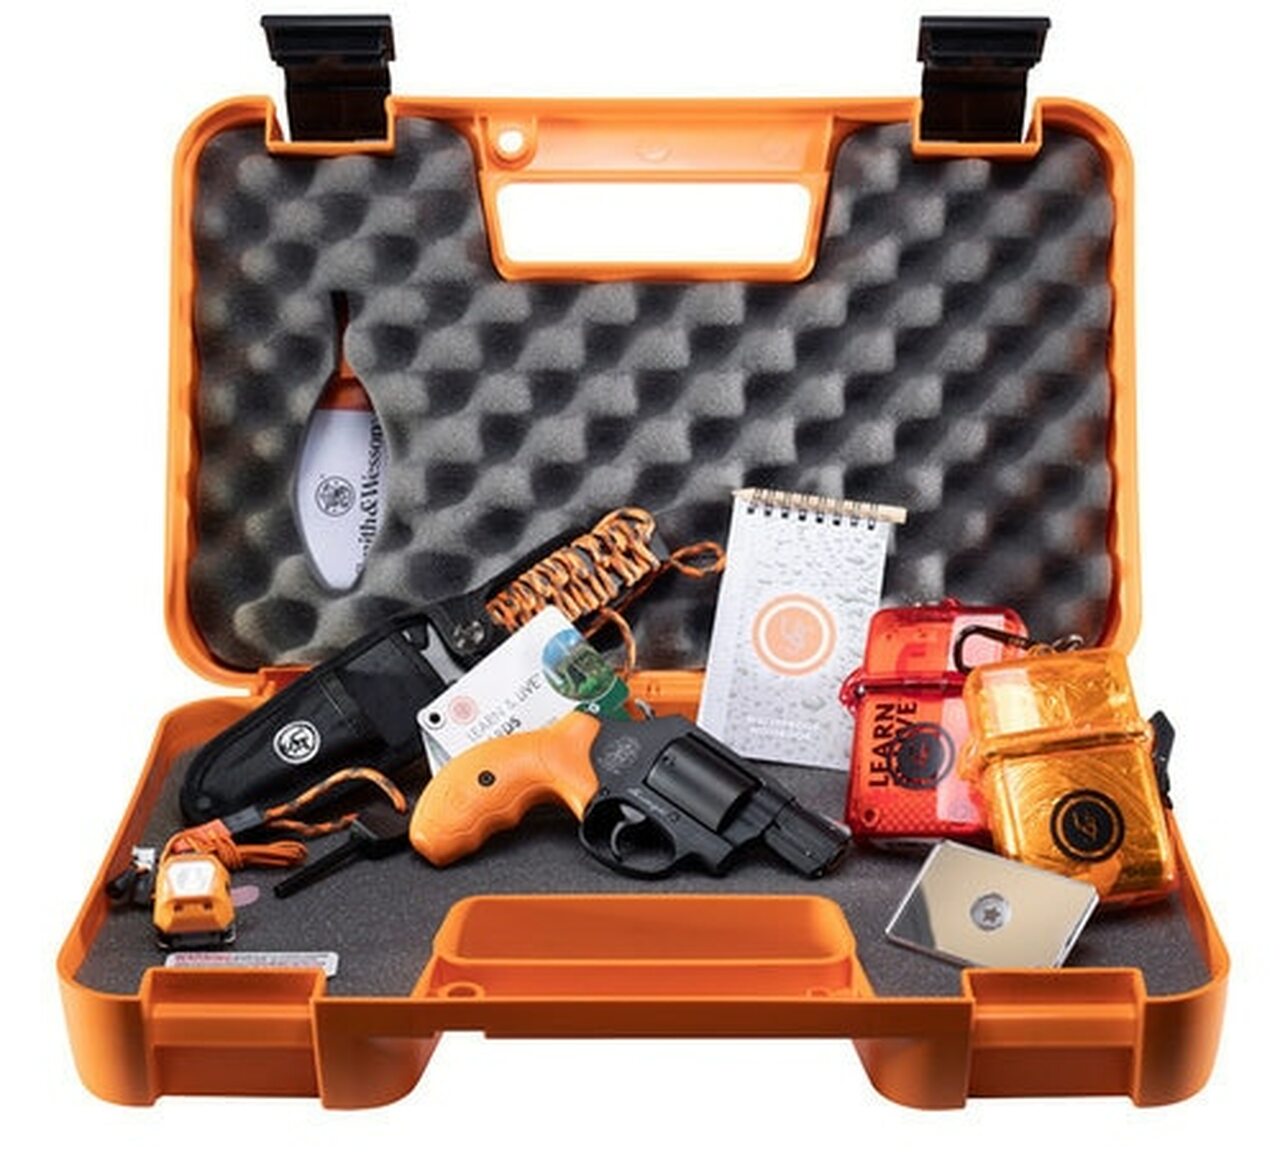 Image of Smith & Wesson 360 Survival Kit, 357 Mag/38 Spl, 1.875" Barrel, 5rd, Safety Orange Grips, Black Frame/Cylinder, Survival Supplies